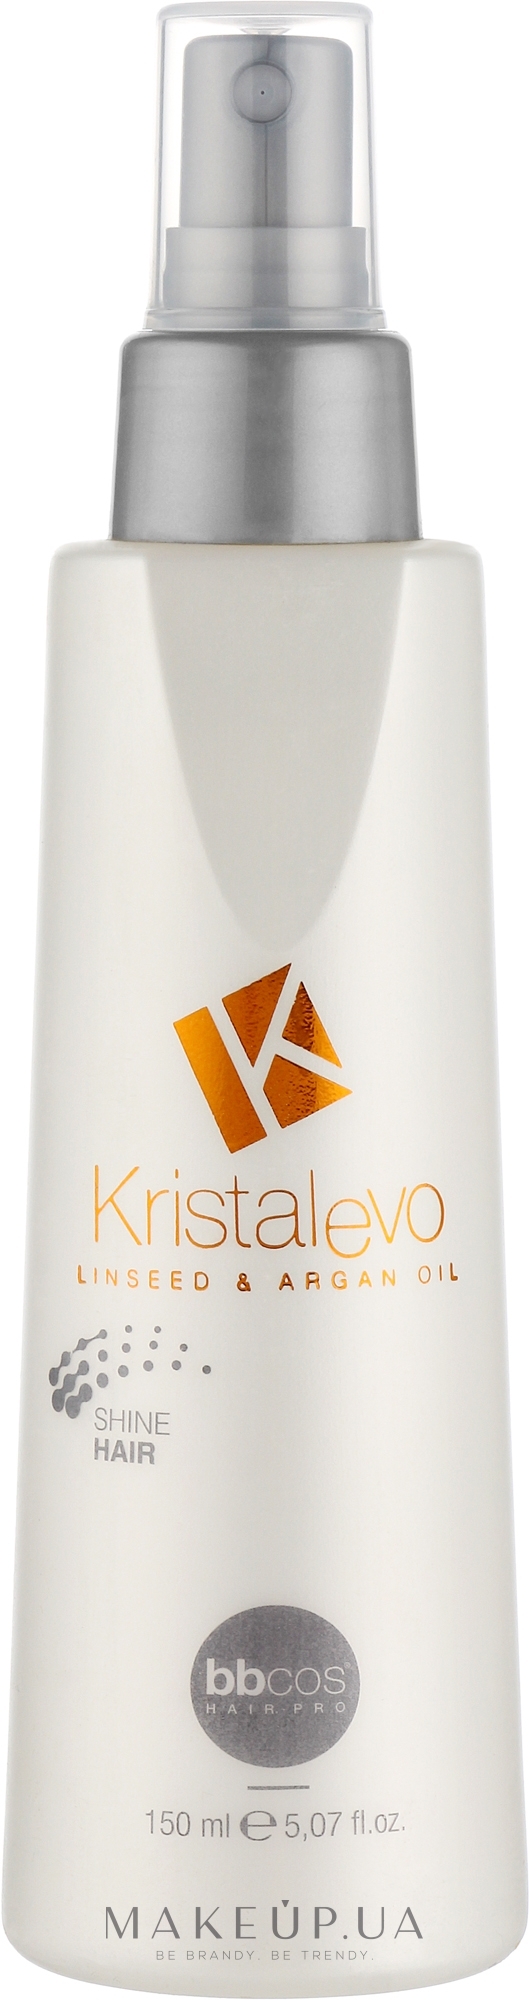 Спрей для блеска волос - Bbcos Kristal Evo Shine Hair Spray — фото 150ml